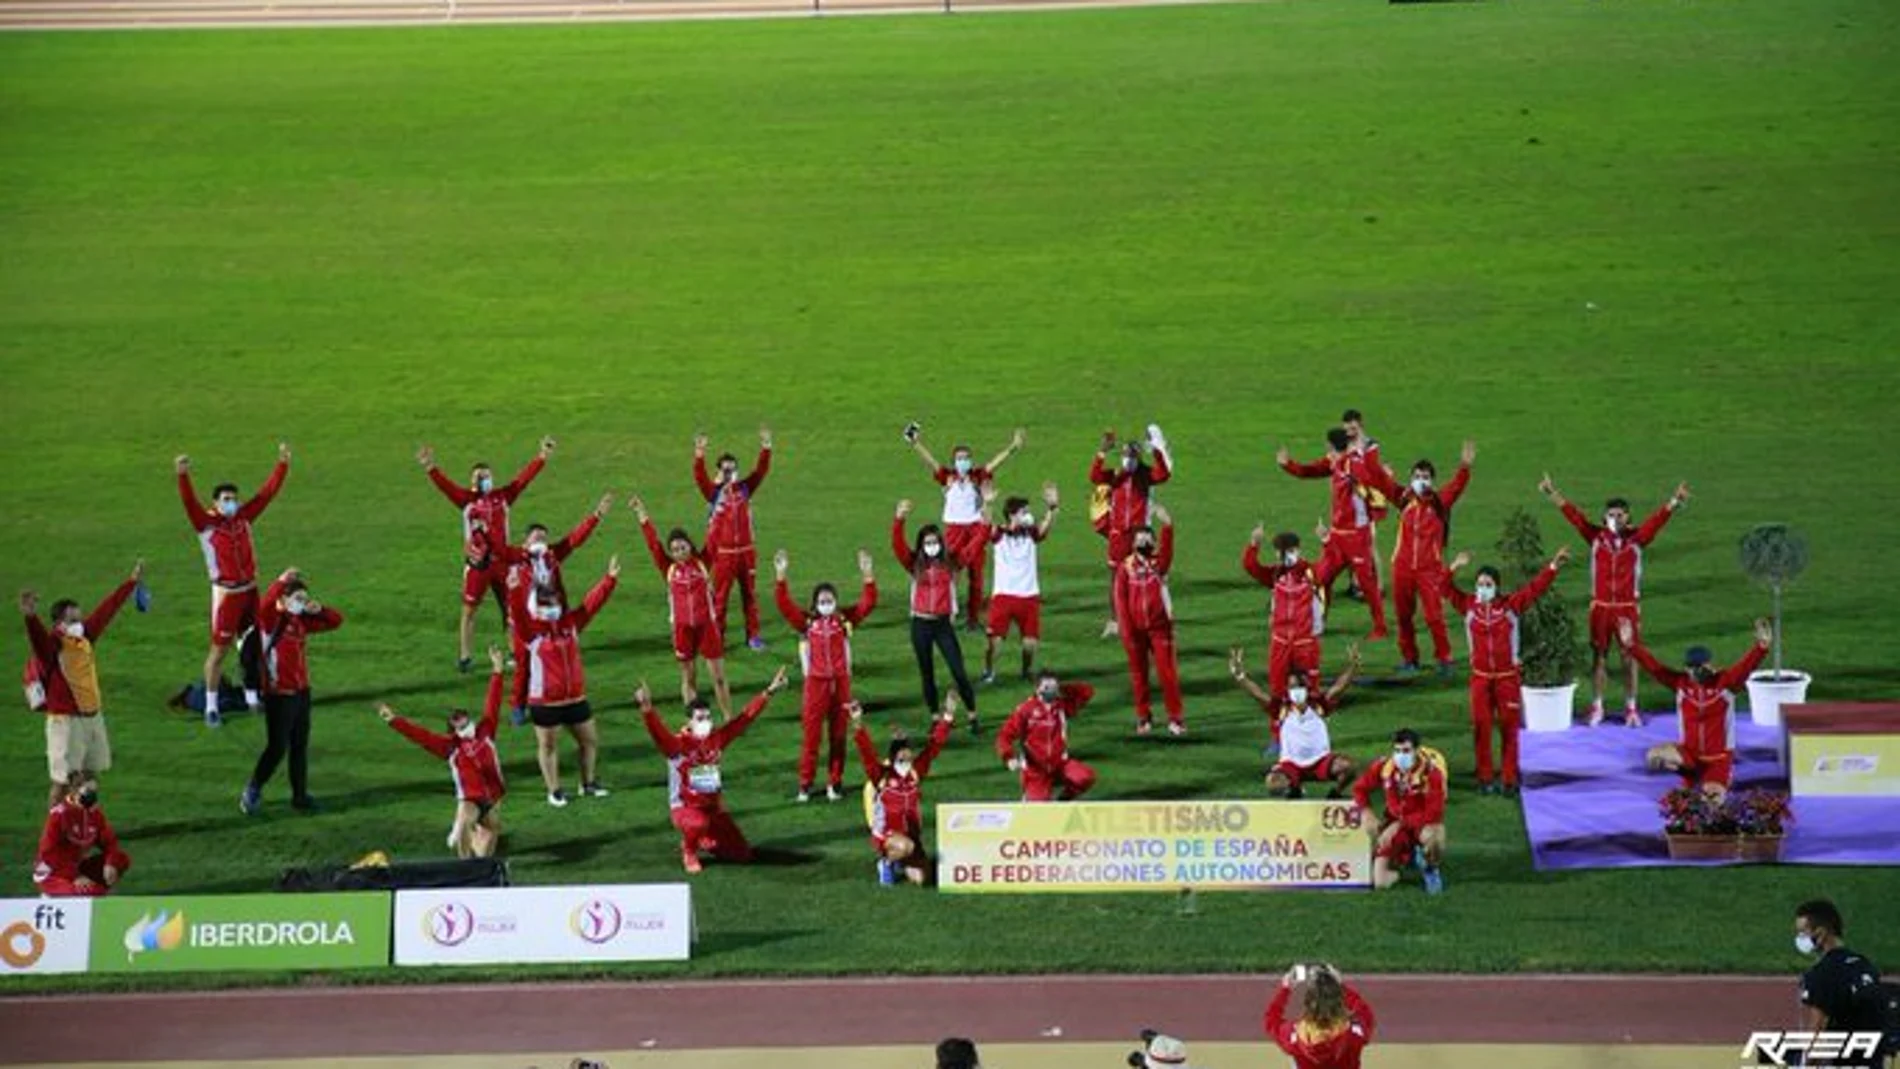 Los integrantes de la selección castellano y leonesa de atletismo celebran la victoria